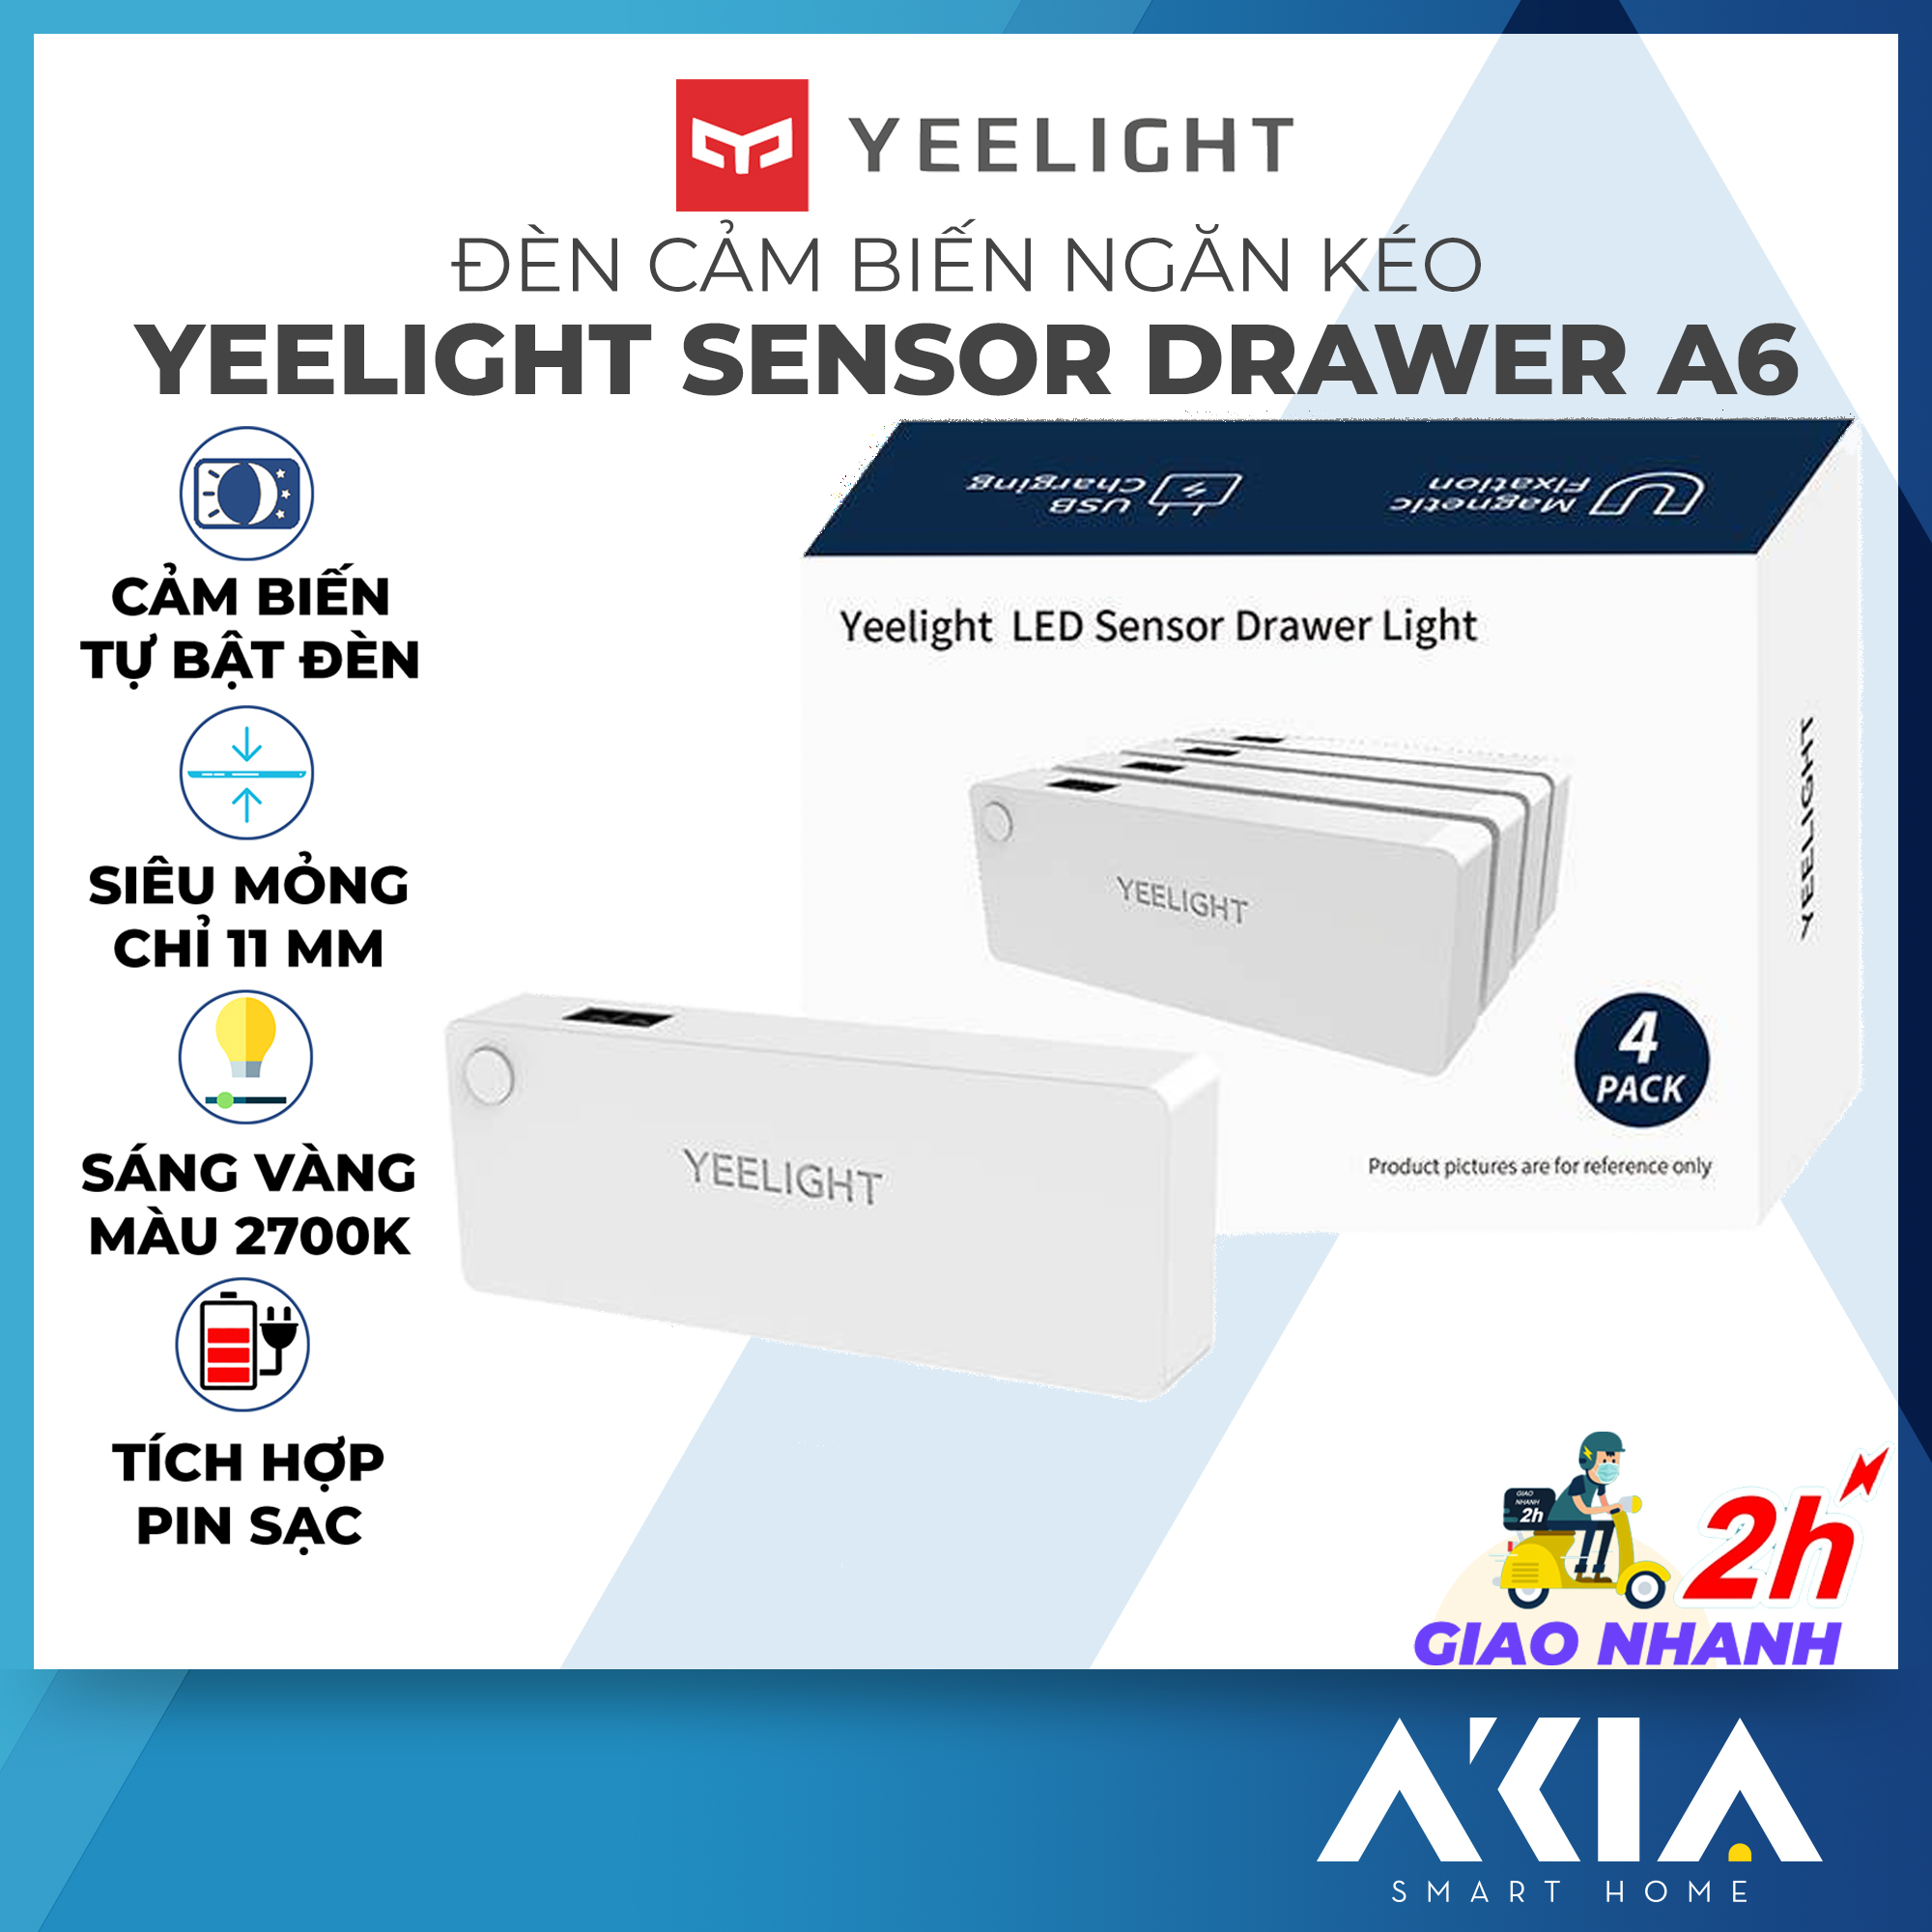 Yeelight LED Indoor Motion Sensor Light for Drawer 4pcs